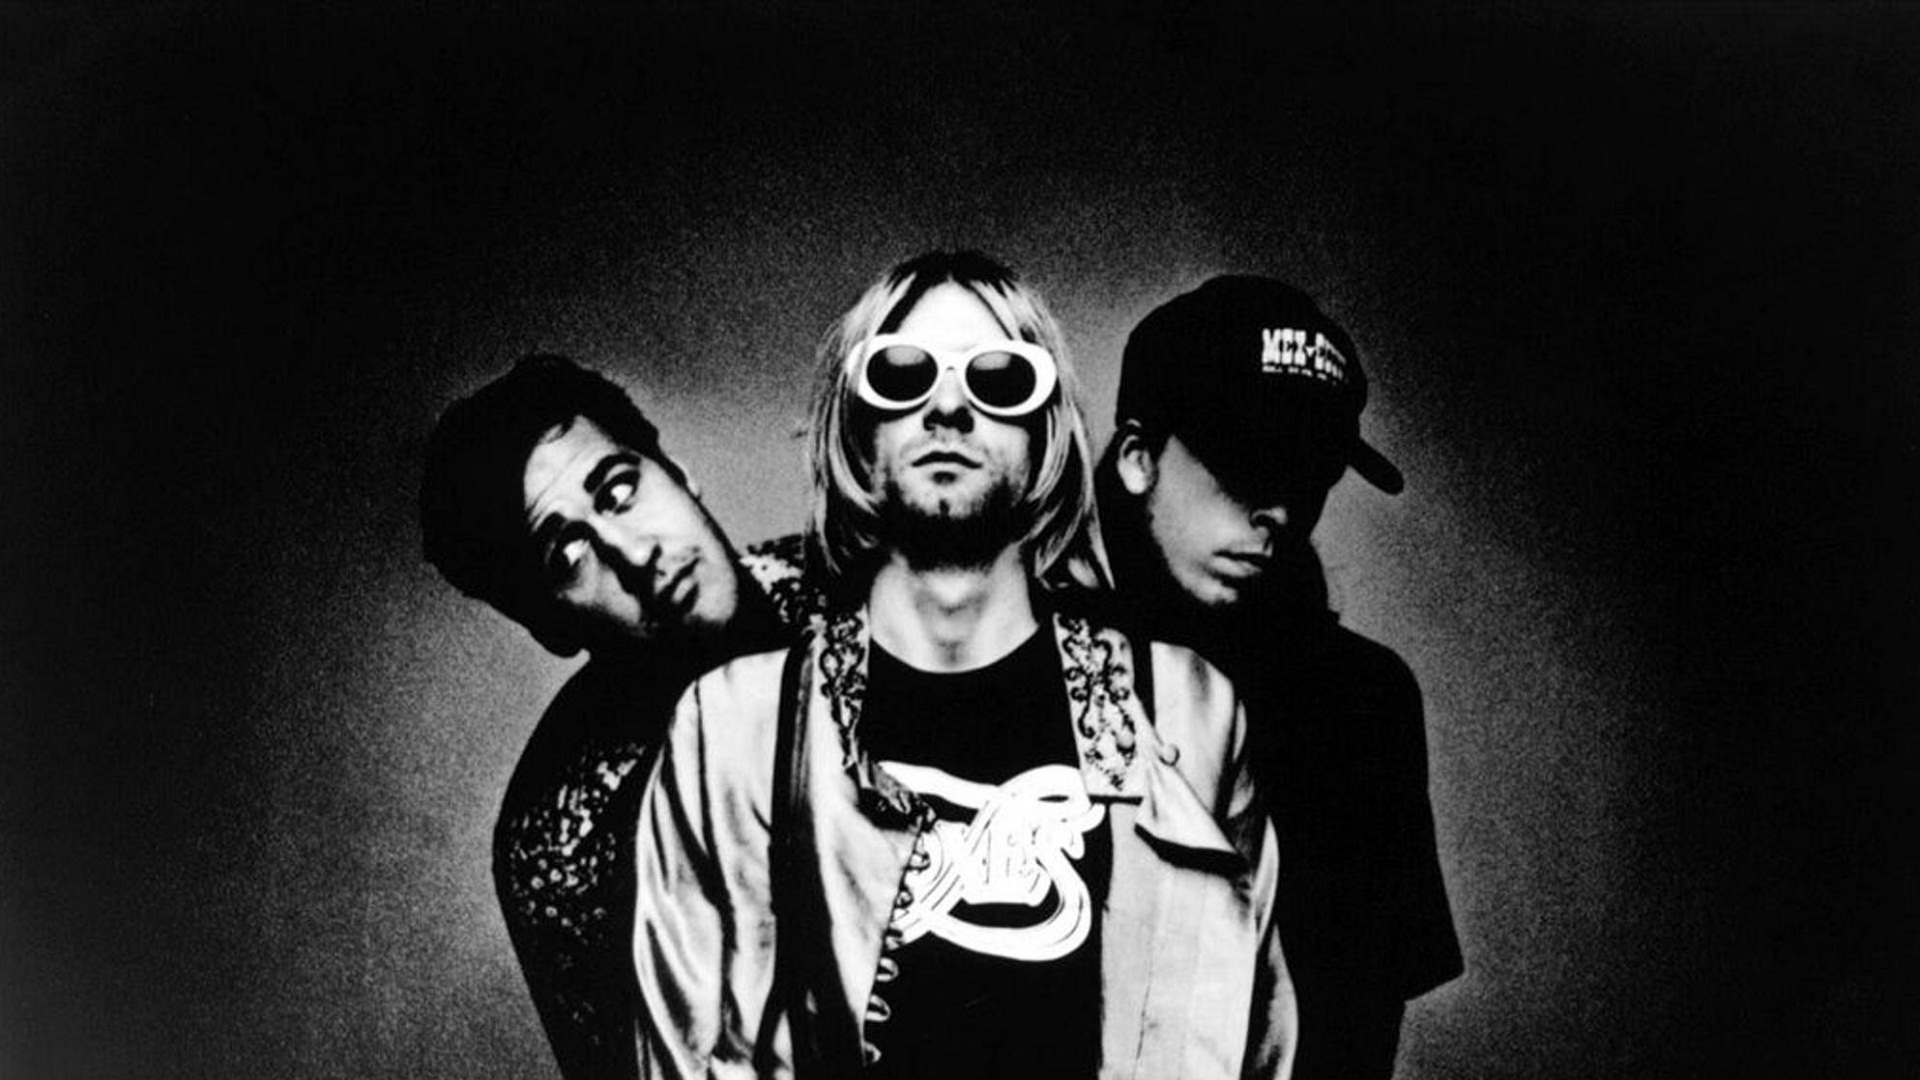 Los miembros sobrevivientes de Nirvana darán concierto benéfico